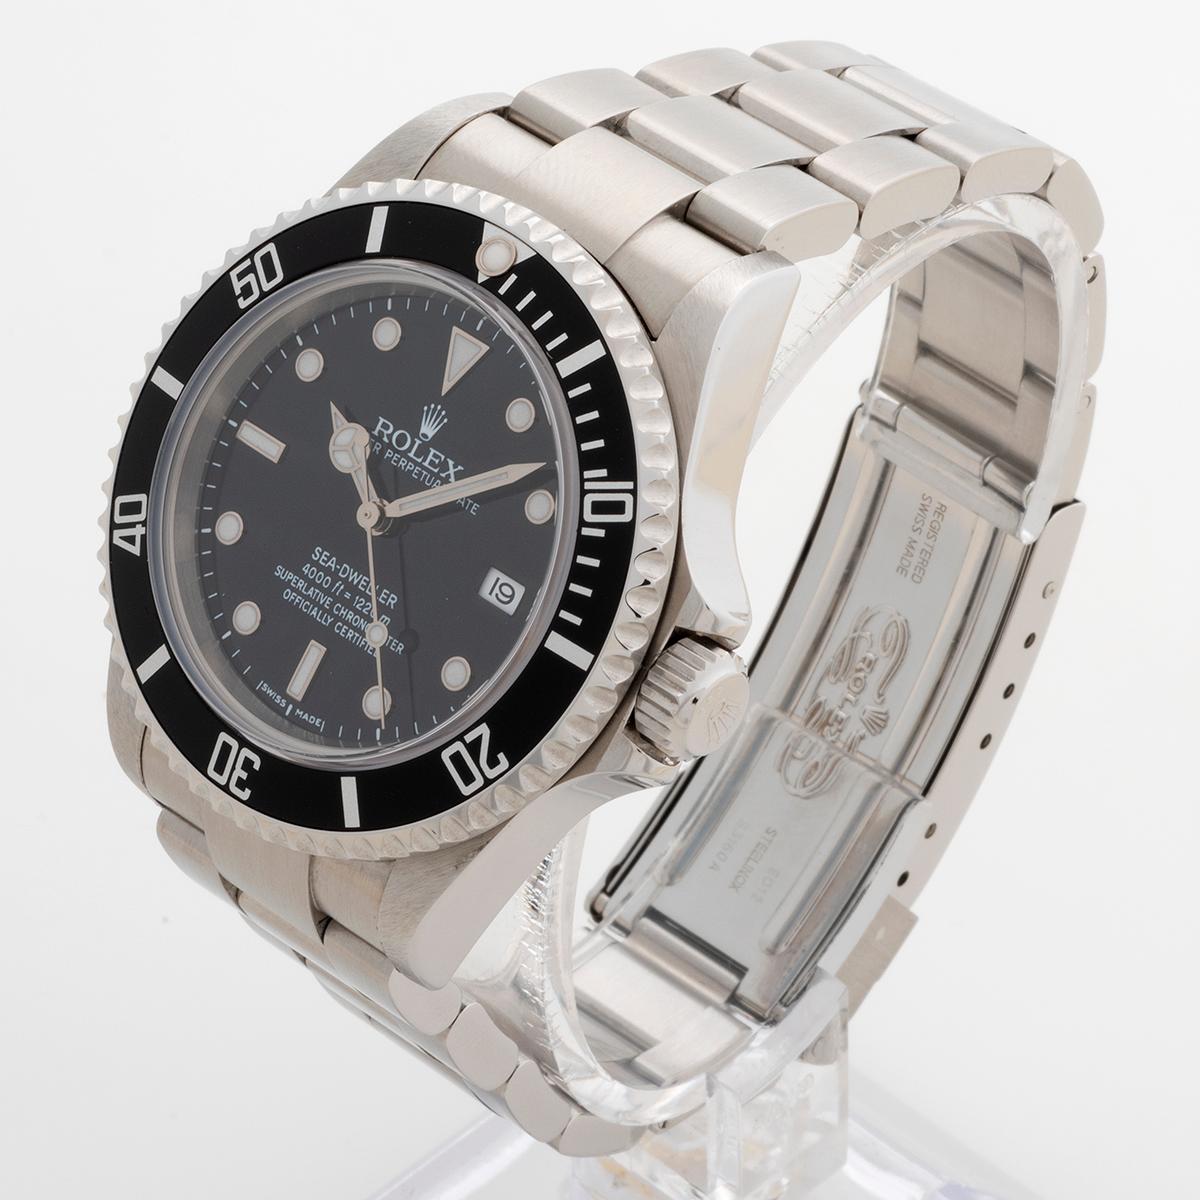 Montre-bracelet Rolex Seadweller Réf. 16600 / 16600t. Ensemble complet. Année 2007/2008 Unisexe en vente